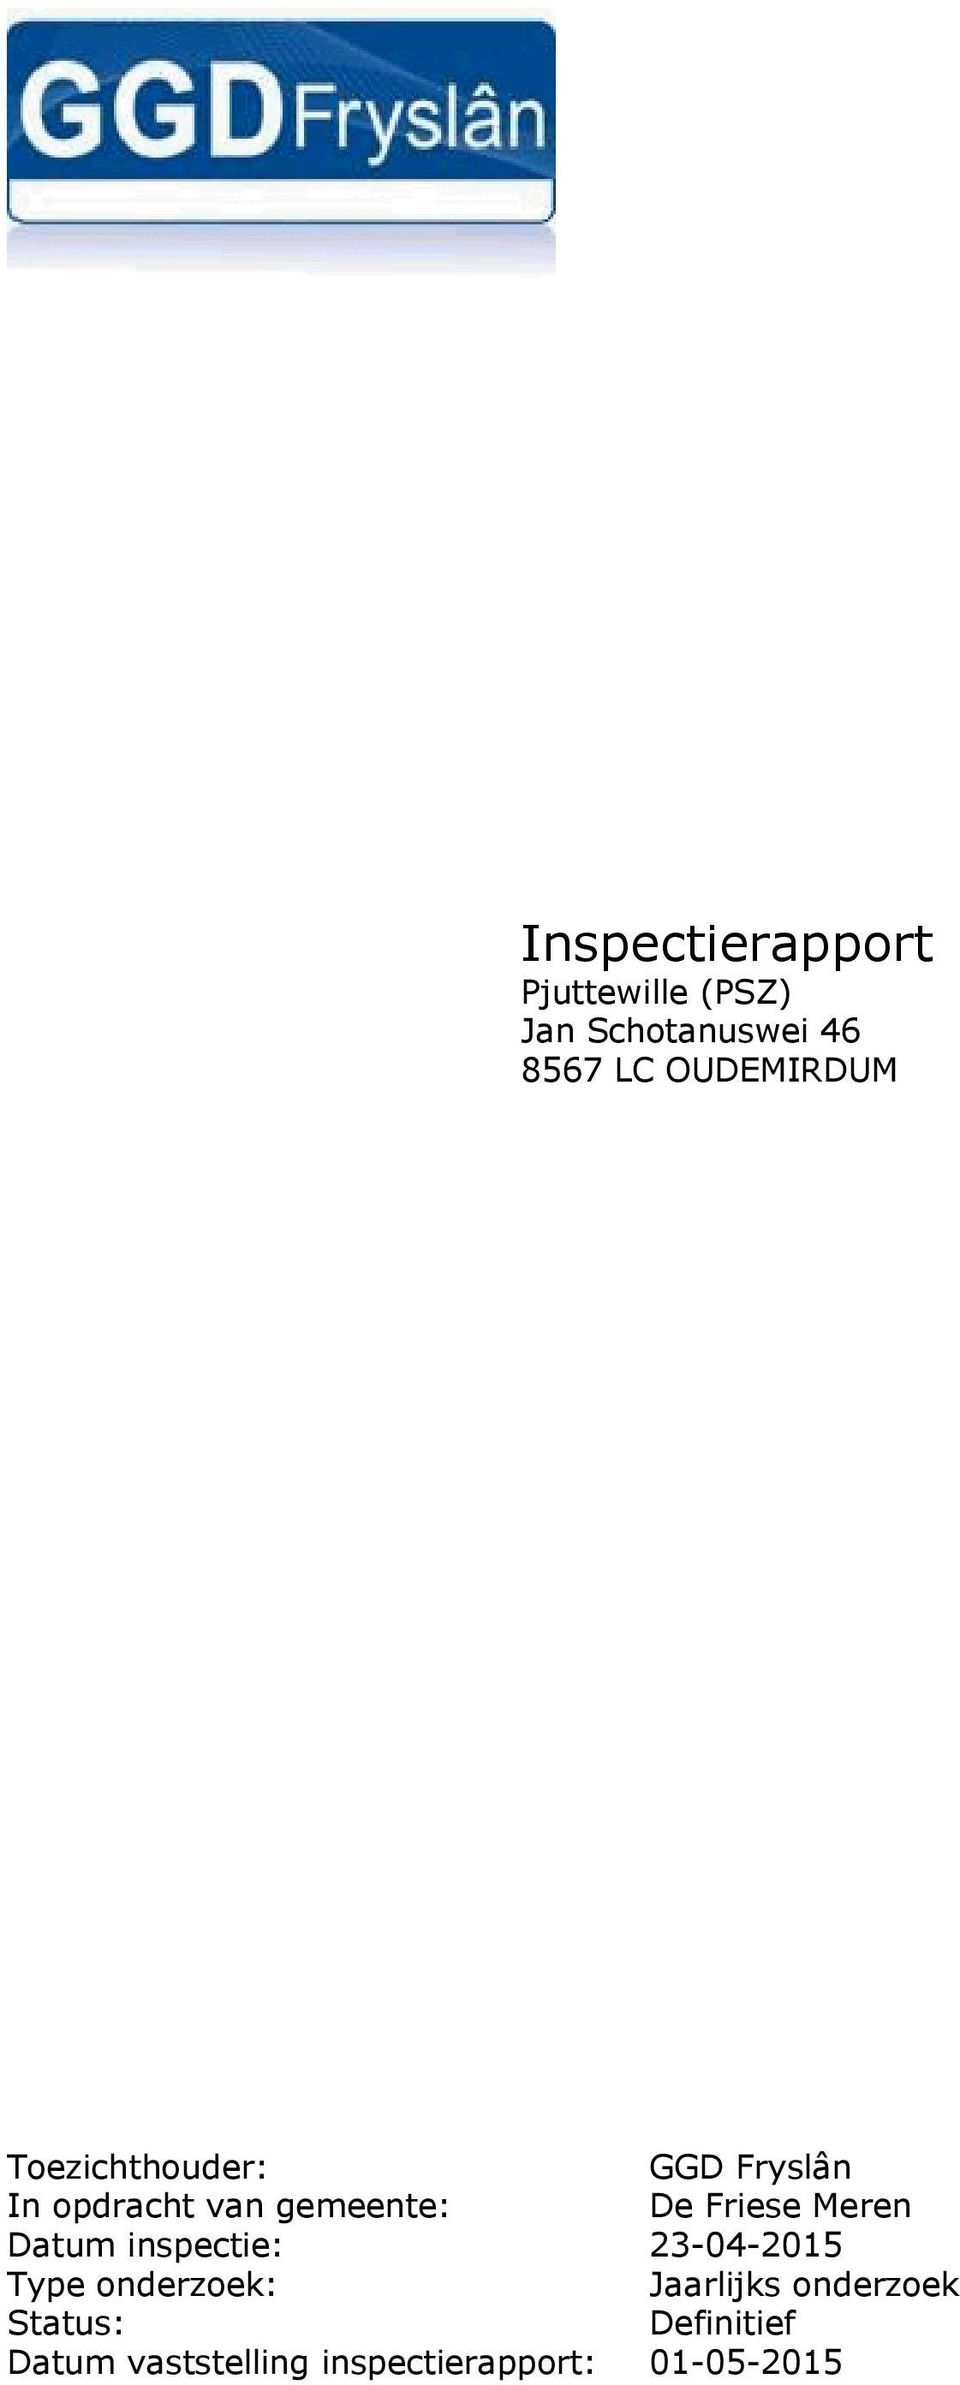 Friese Meren Datum inspectie: 23-04-2015 Type onderzoek: Jaarlijks